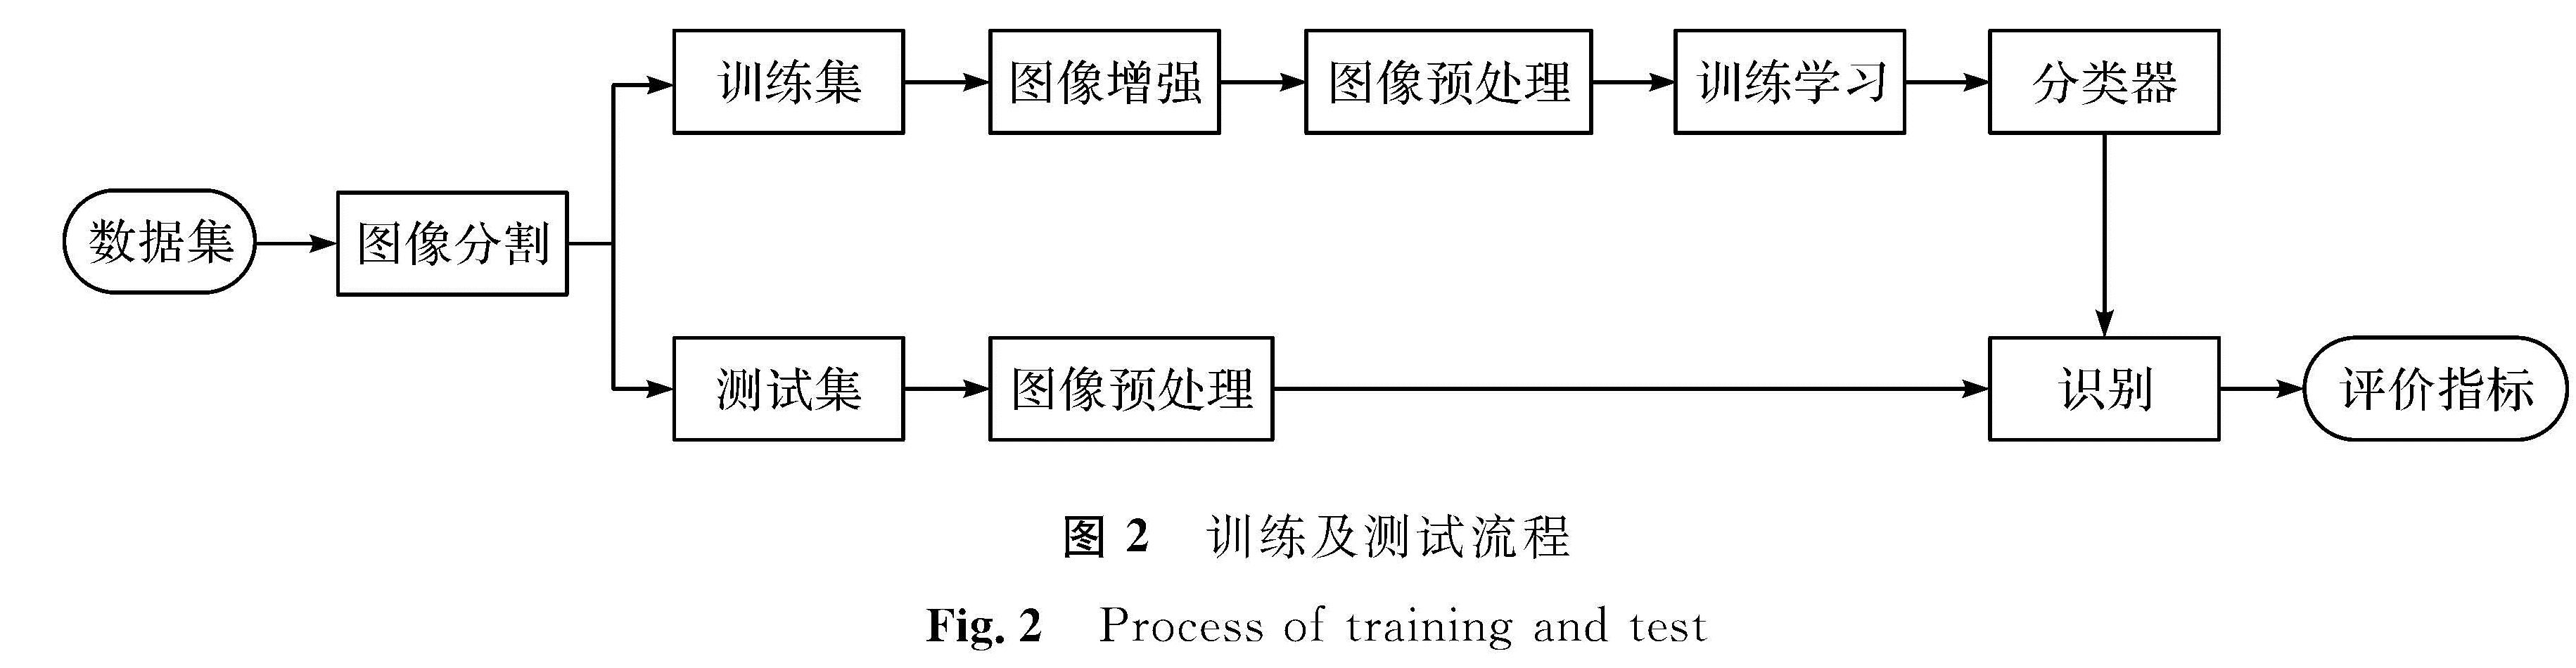 图2 训练及测试流程<br/>Fig.2 Process of training and test